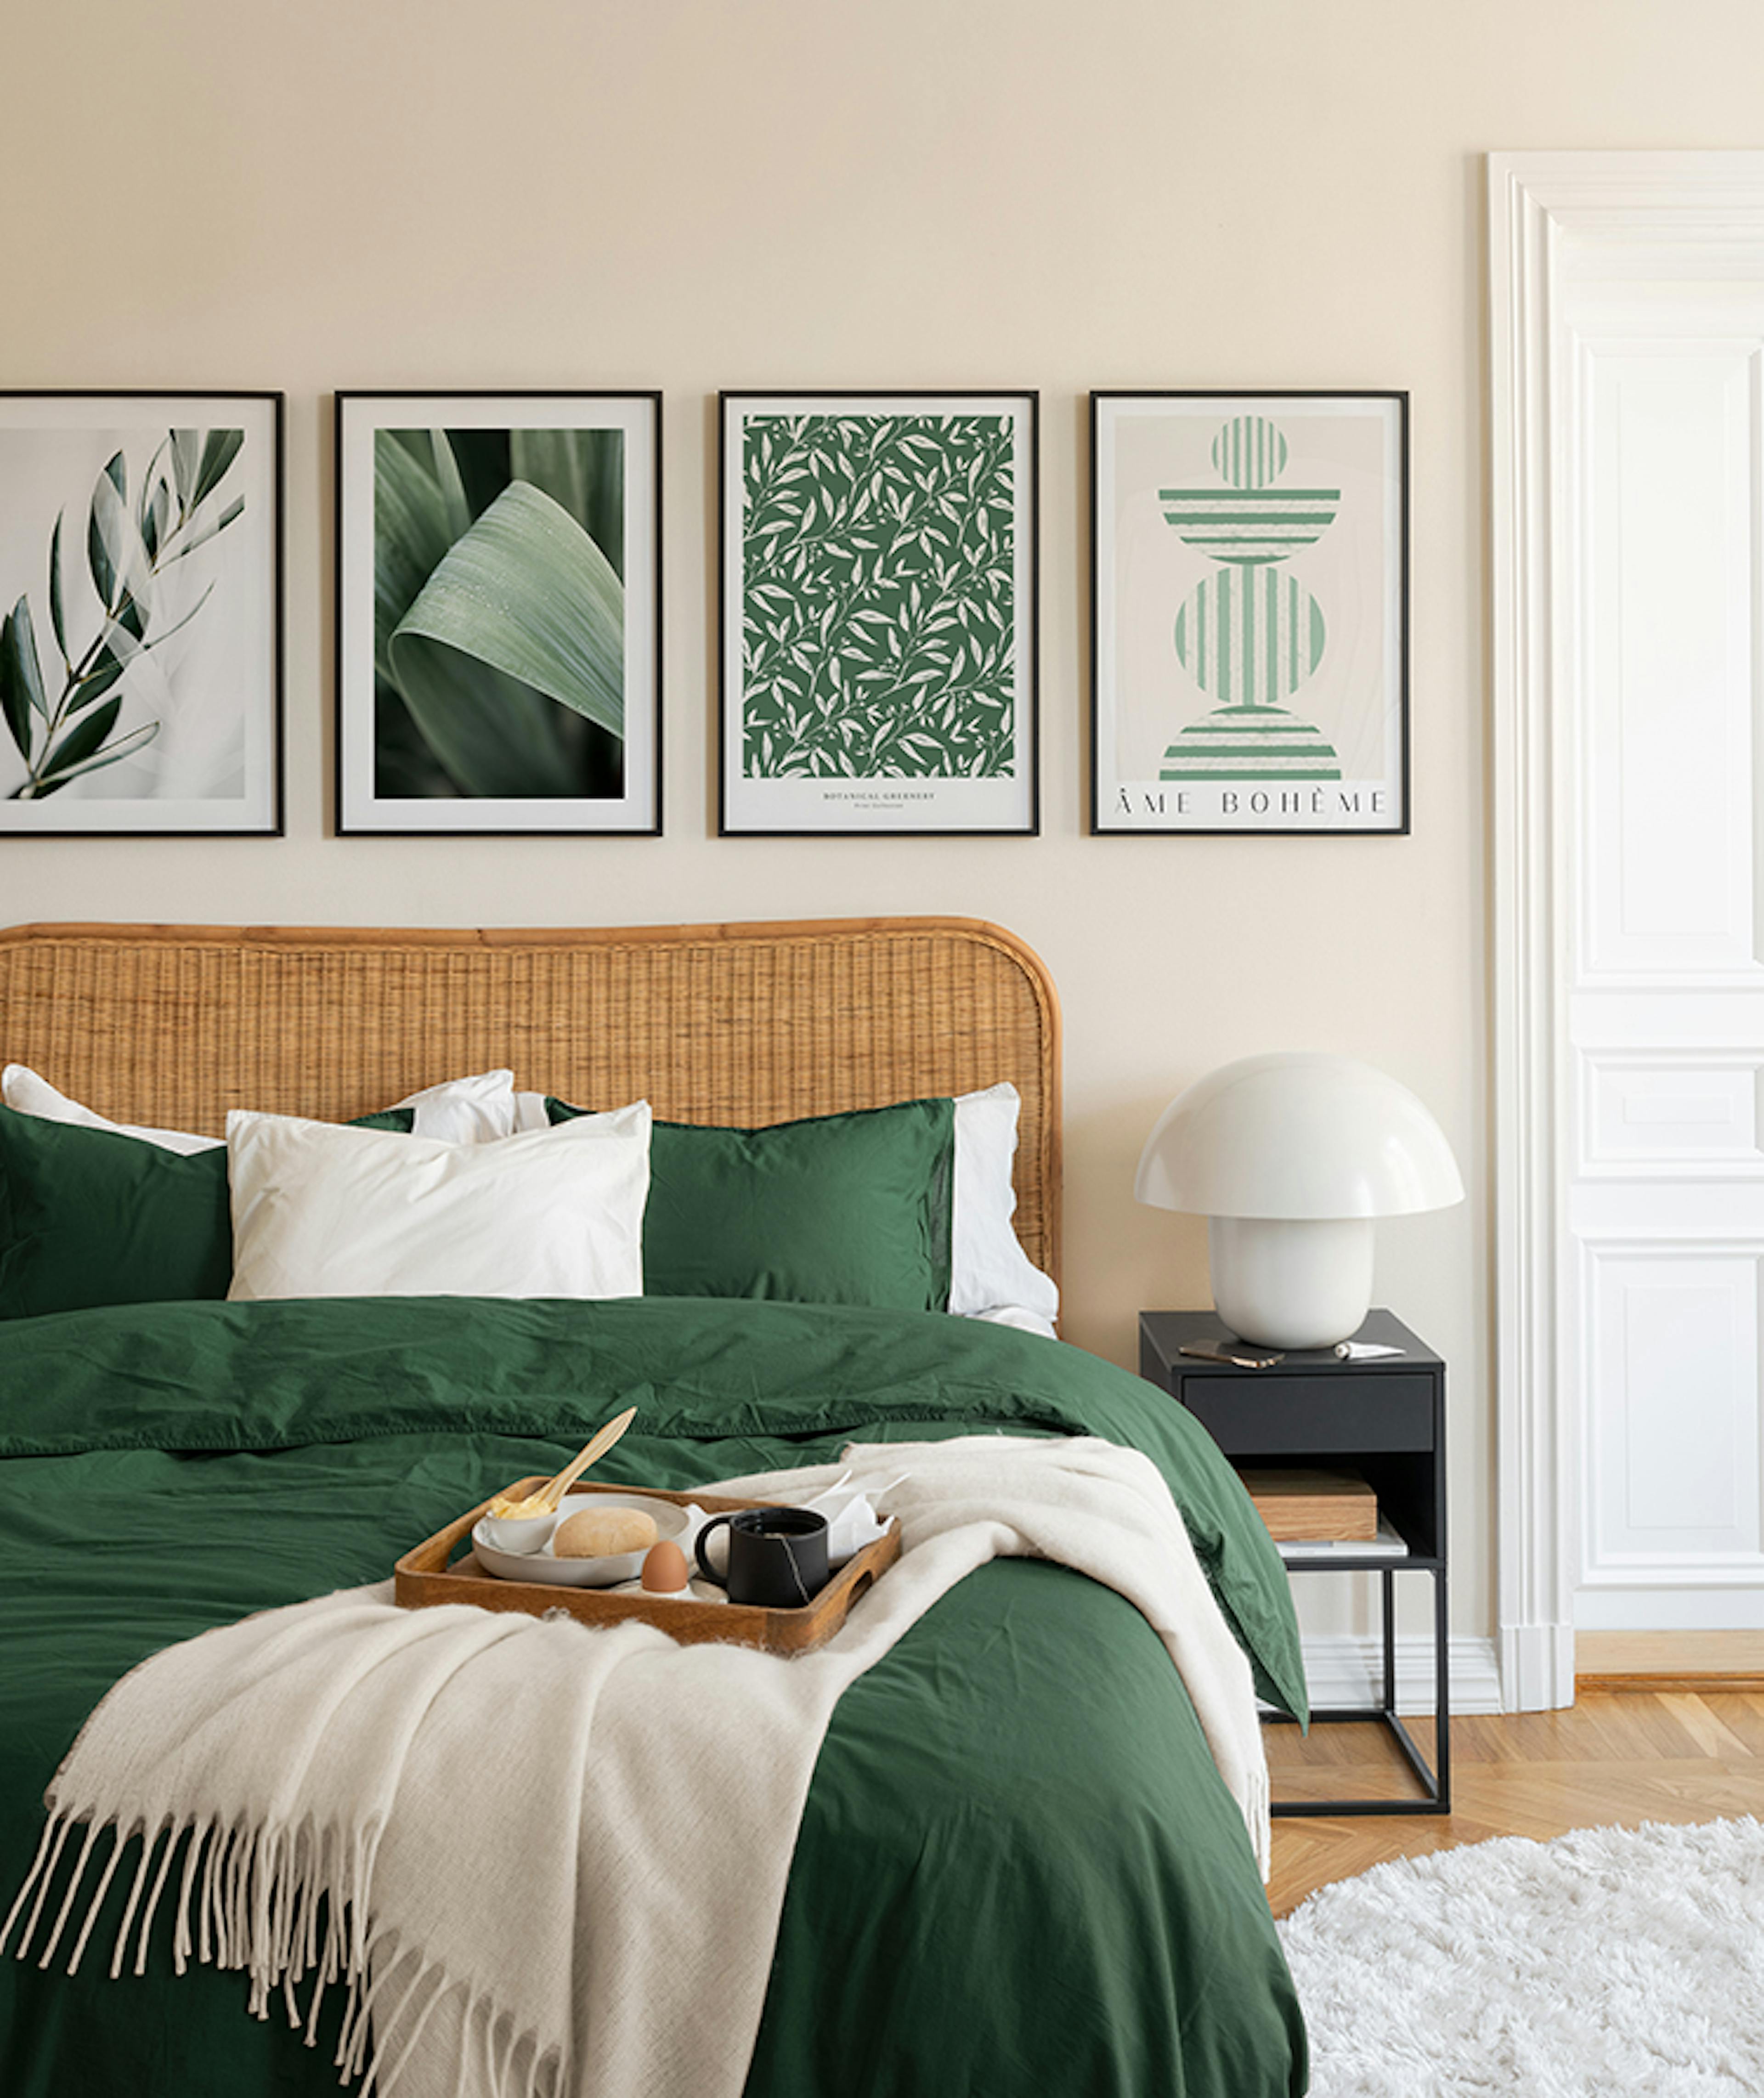 لوحات جدارية فنية بتصميم تجريدي وصور فوتوغرافية يجمع بينهم اللون الأخضر ويحيطها إطارات خشبية سوداء وهي تناسب غرفة النوم